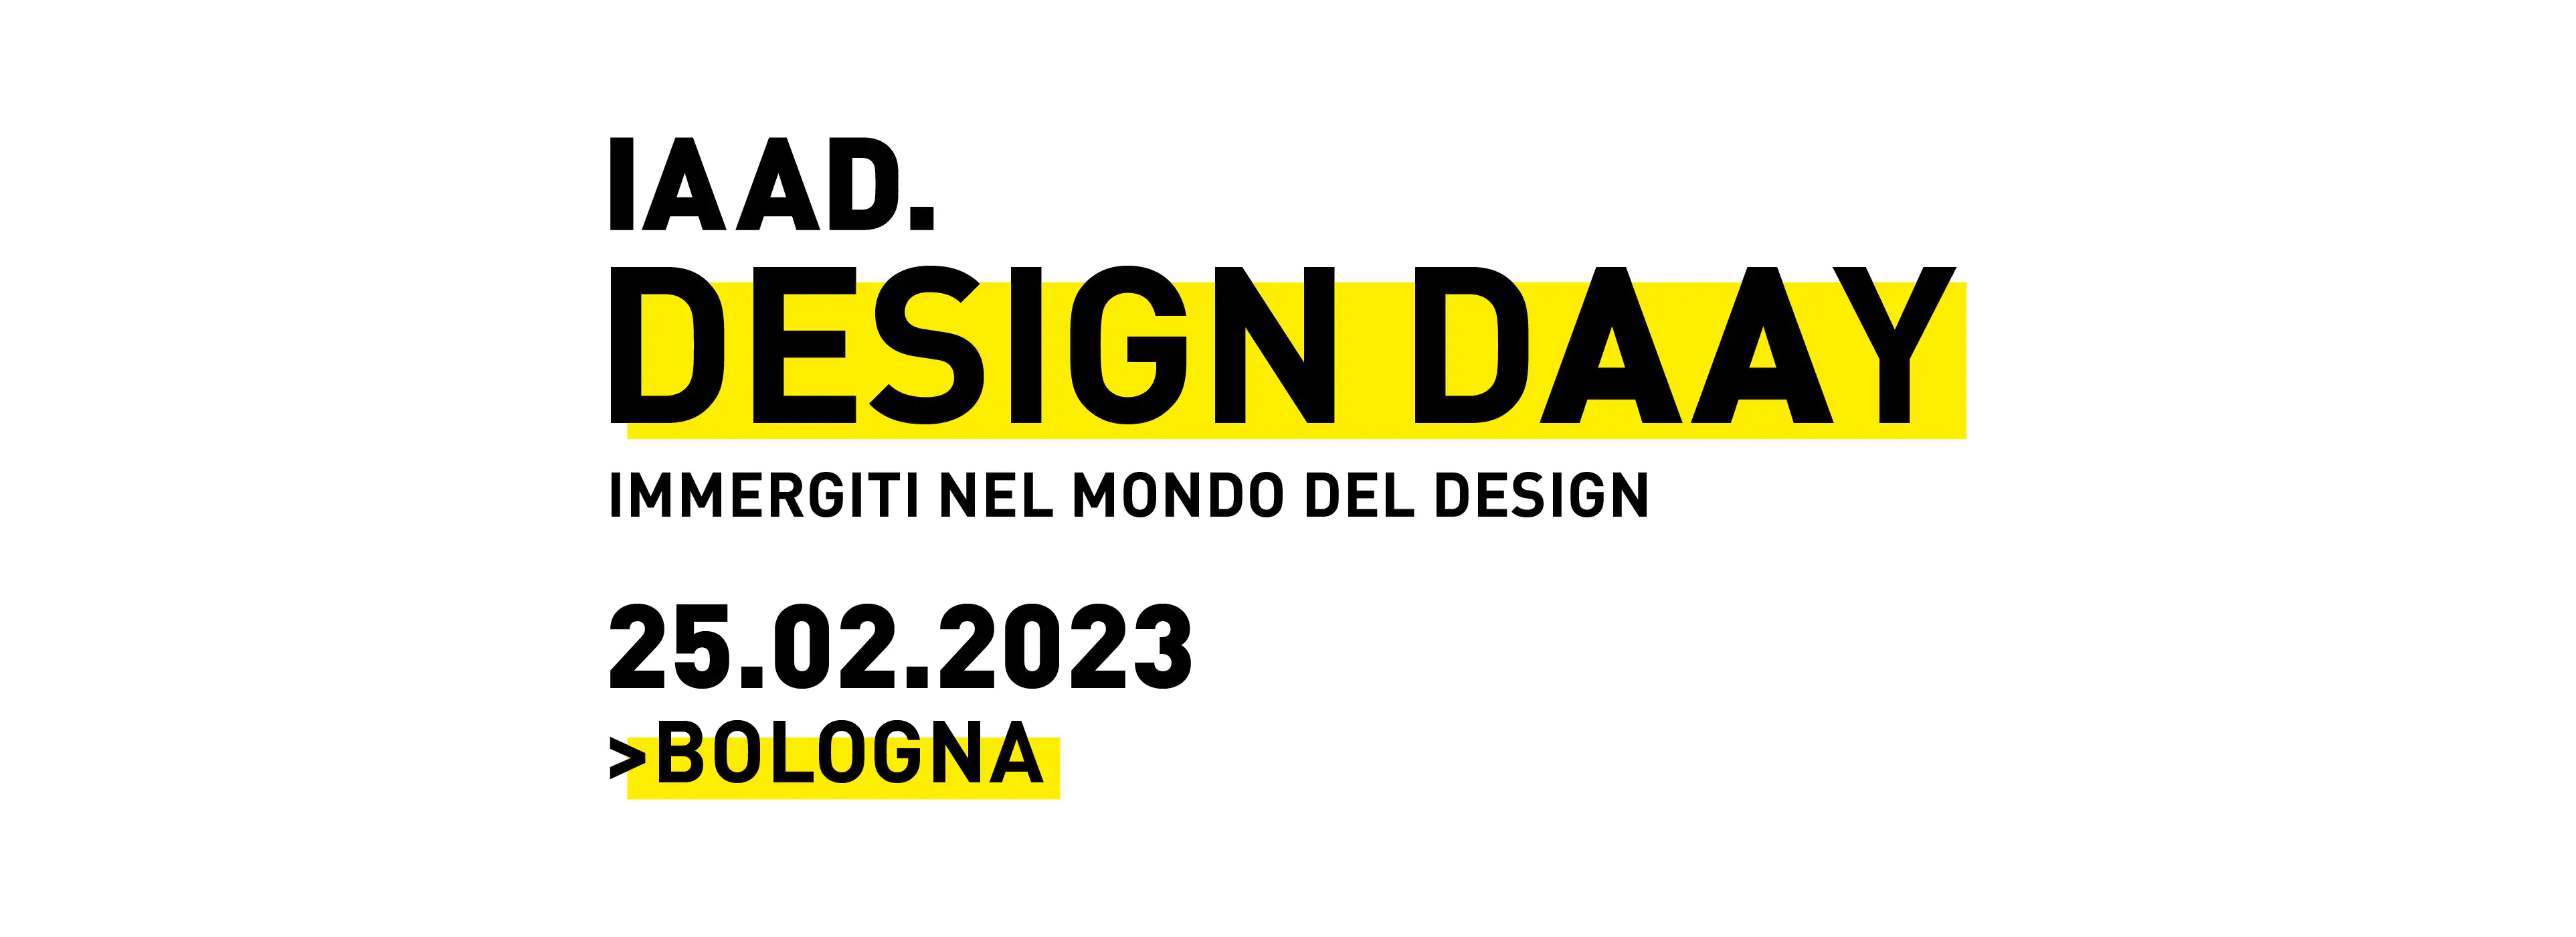 Il Design DAAy è una giornata dedicata al mondo design organizzata da IAAD. Bologna